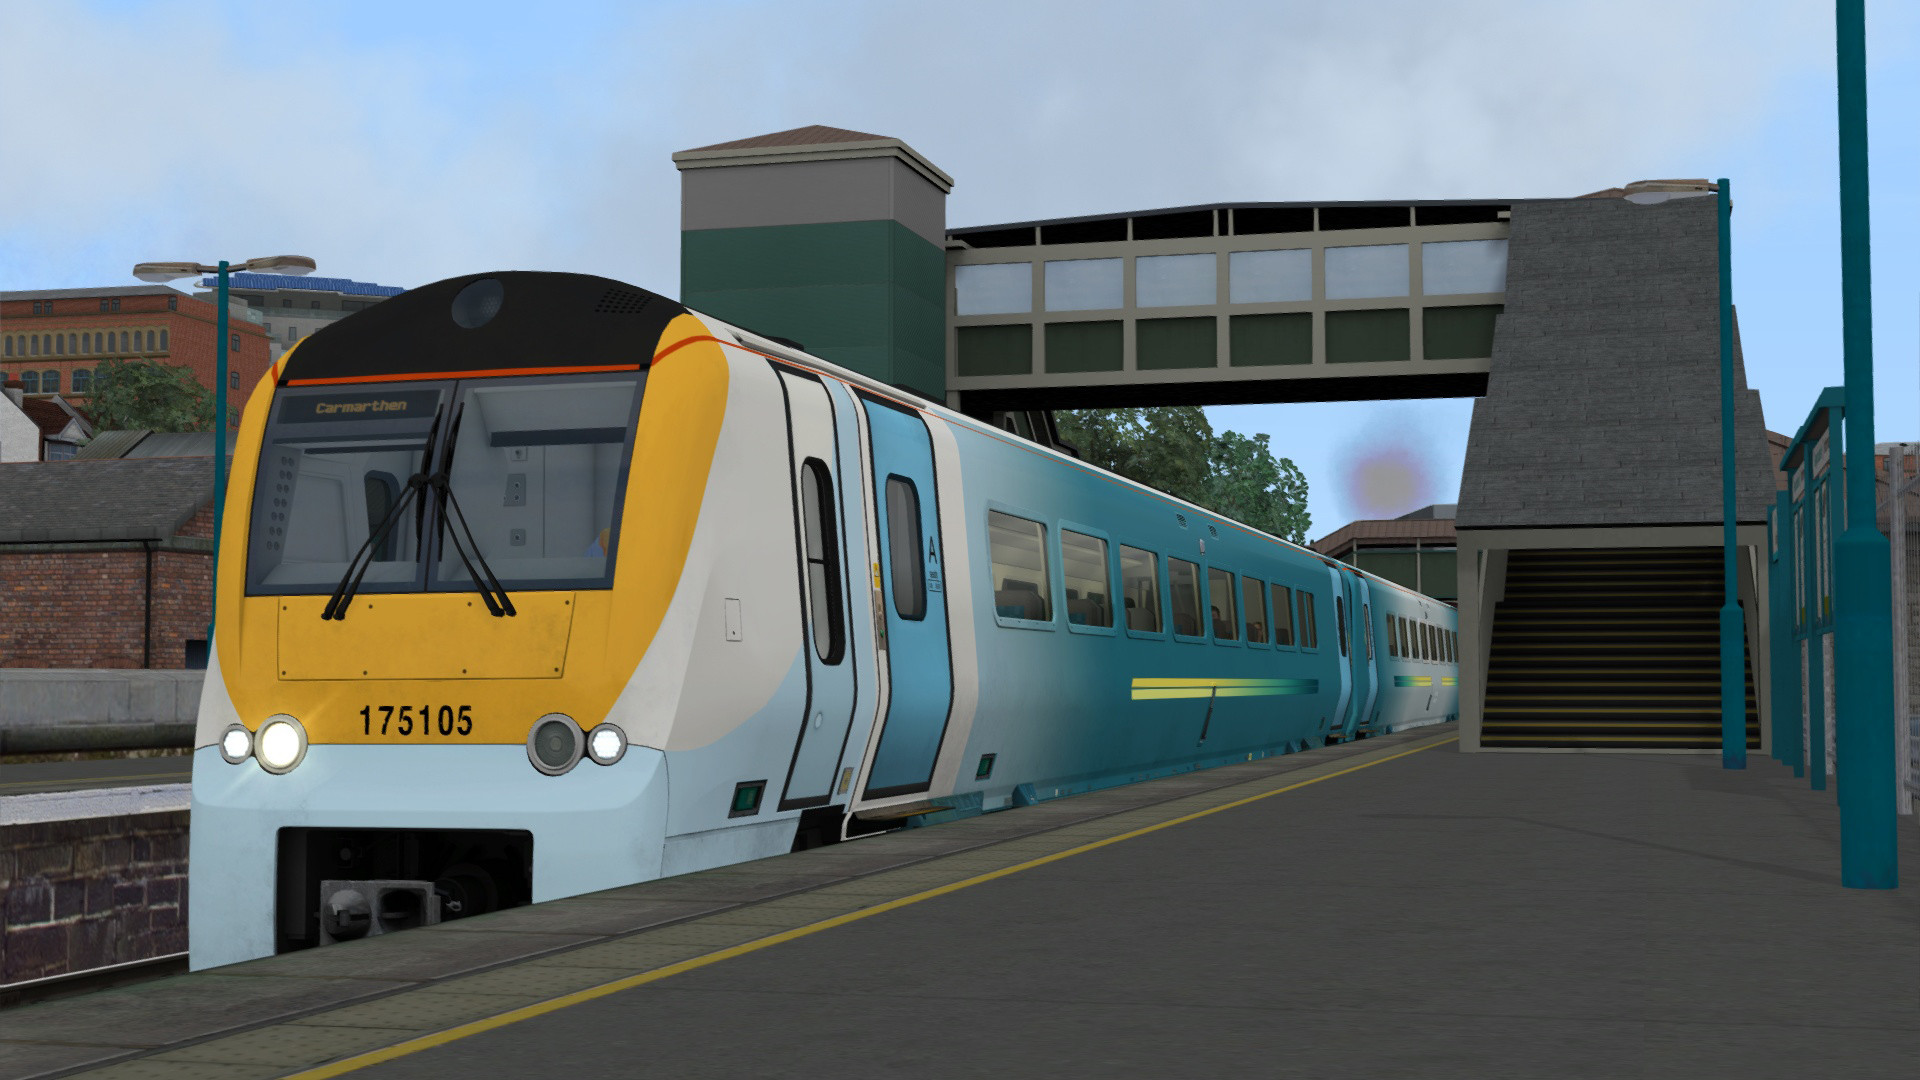 Train Simulator - South Wales Coastal: Bristol - Swansea Route Add-on DLC Steam CD Key [$ 4.17]